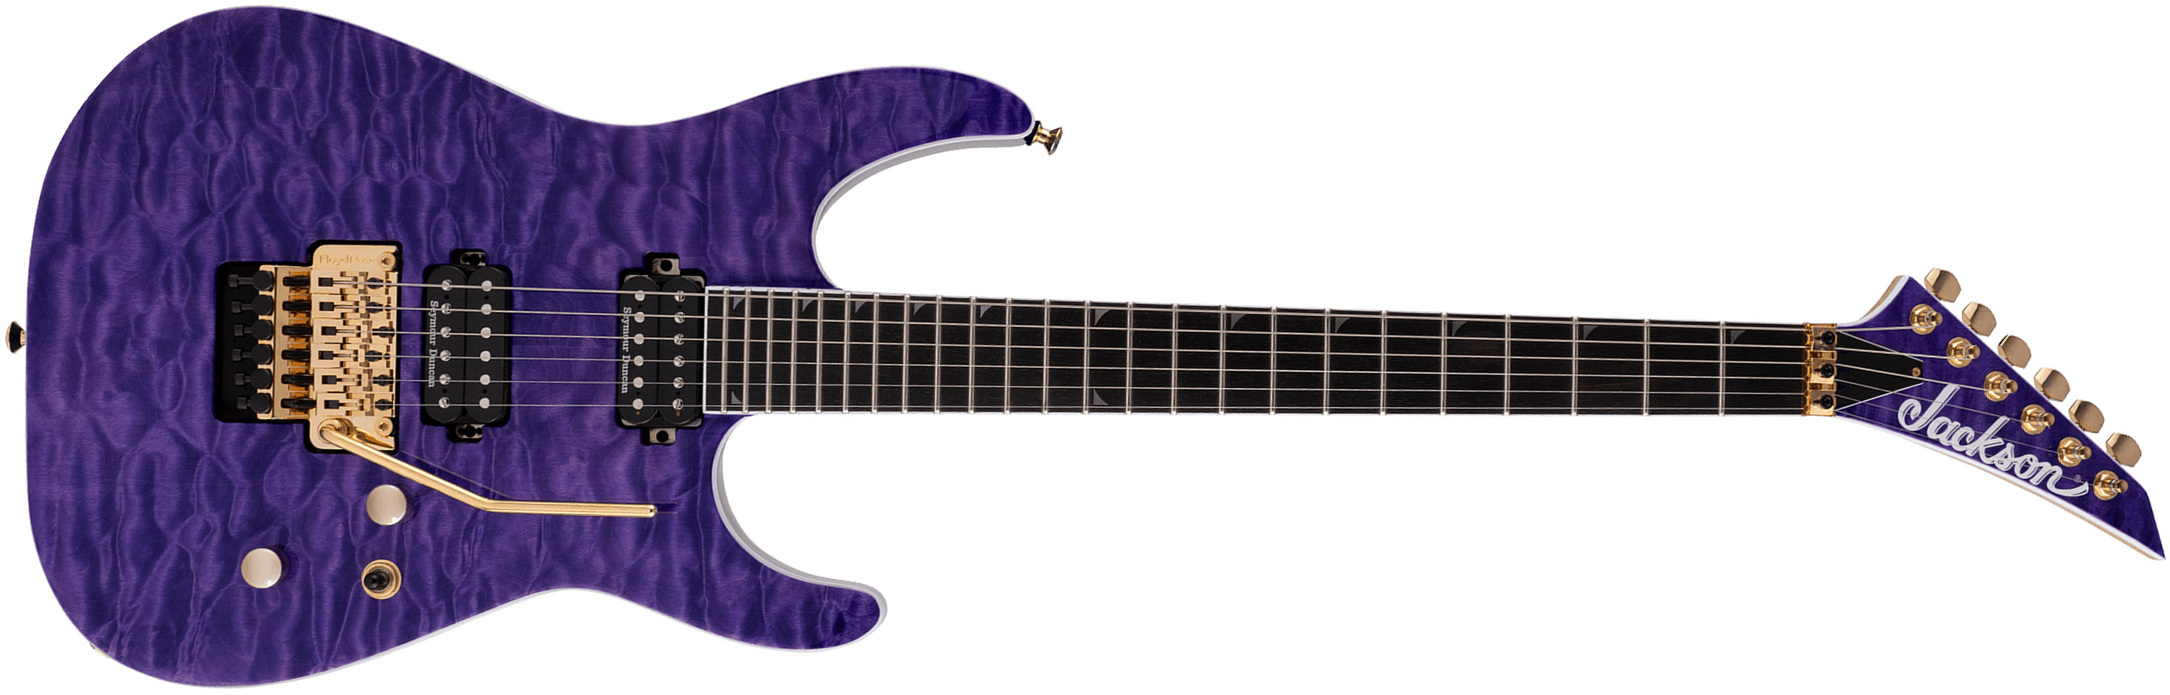 Jackson Soloist Sl2q Mah Pro 2h Seymour Duncan Fr Eb - Transparent Purple - Str shape electric guitar - Main picture